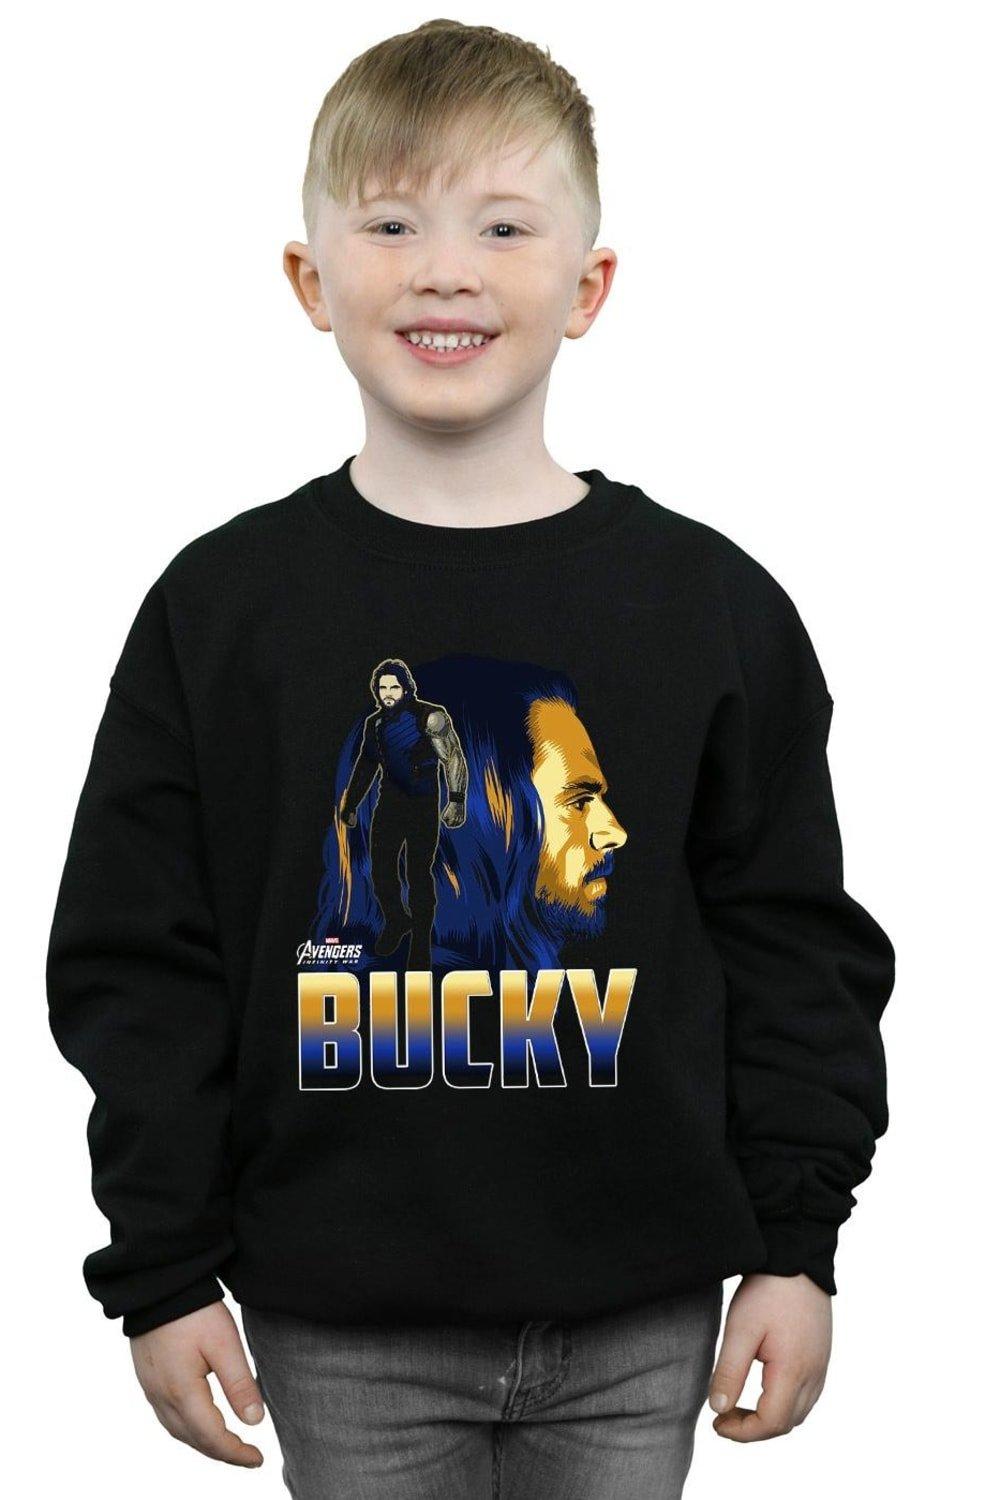 Avengers Infinity War Bucky Character Sweatshirt